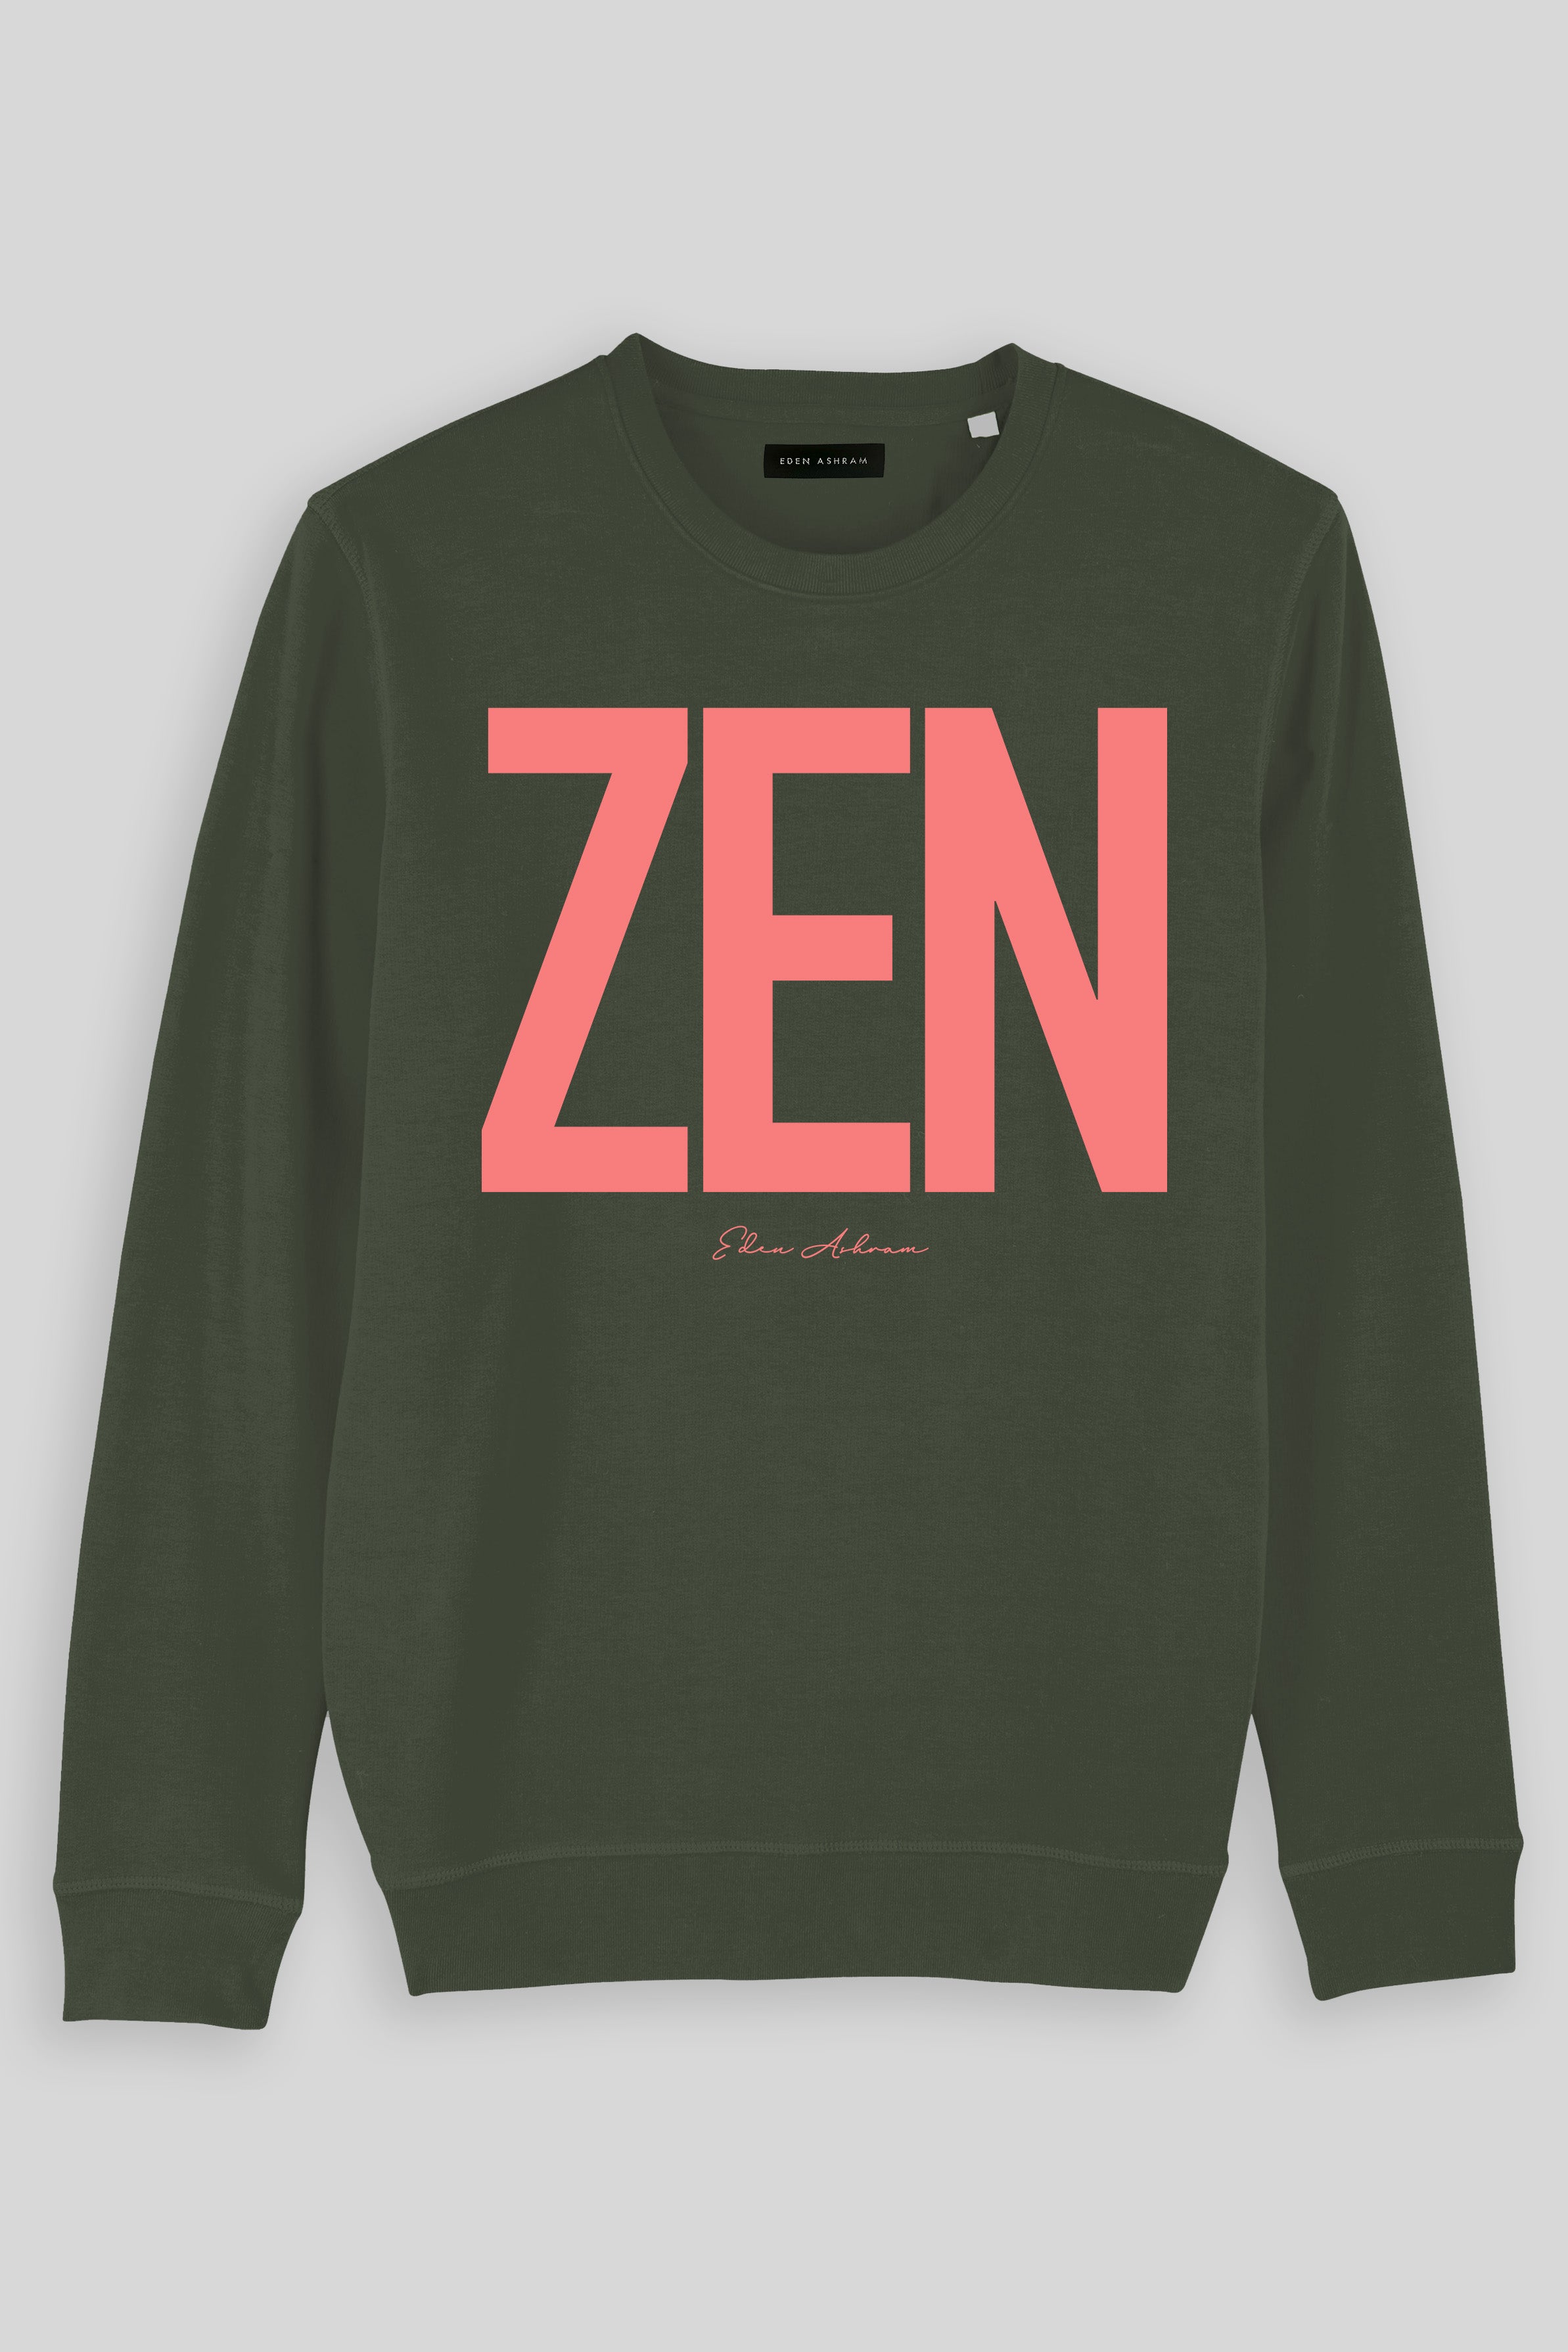 Eden Ashram ZEN Premium Crew Neck Sweatshirt Khaki